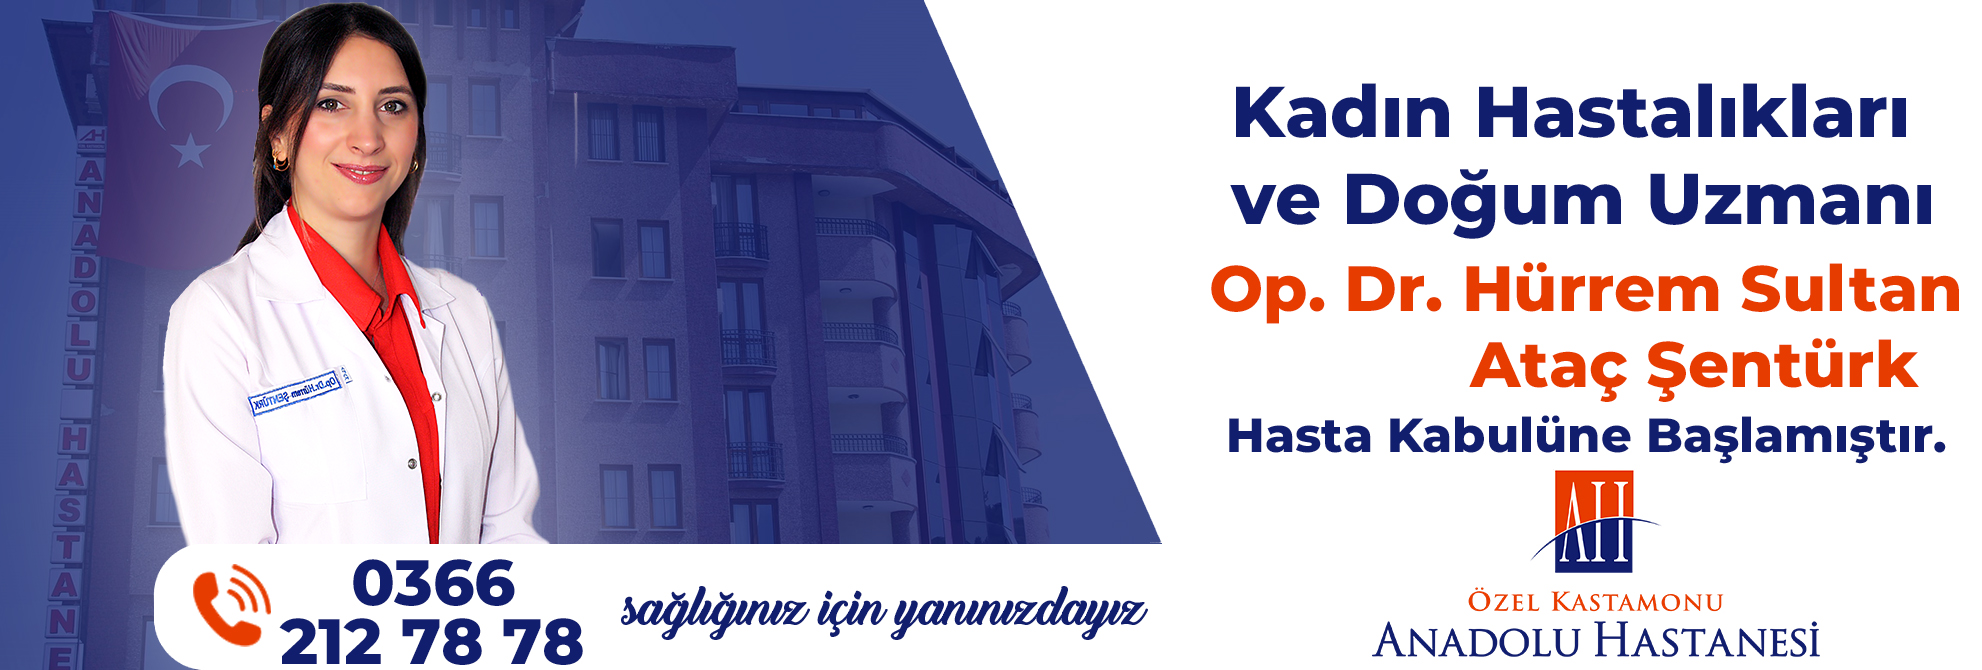 Özel Kastamonu Anadolu Hastaneleri